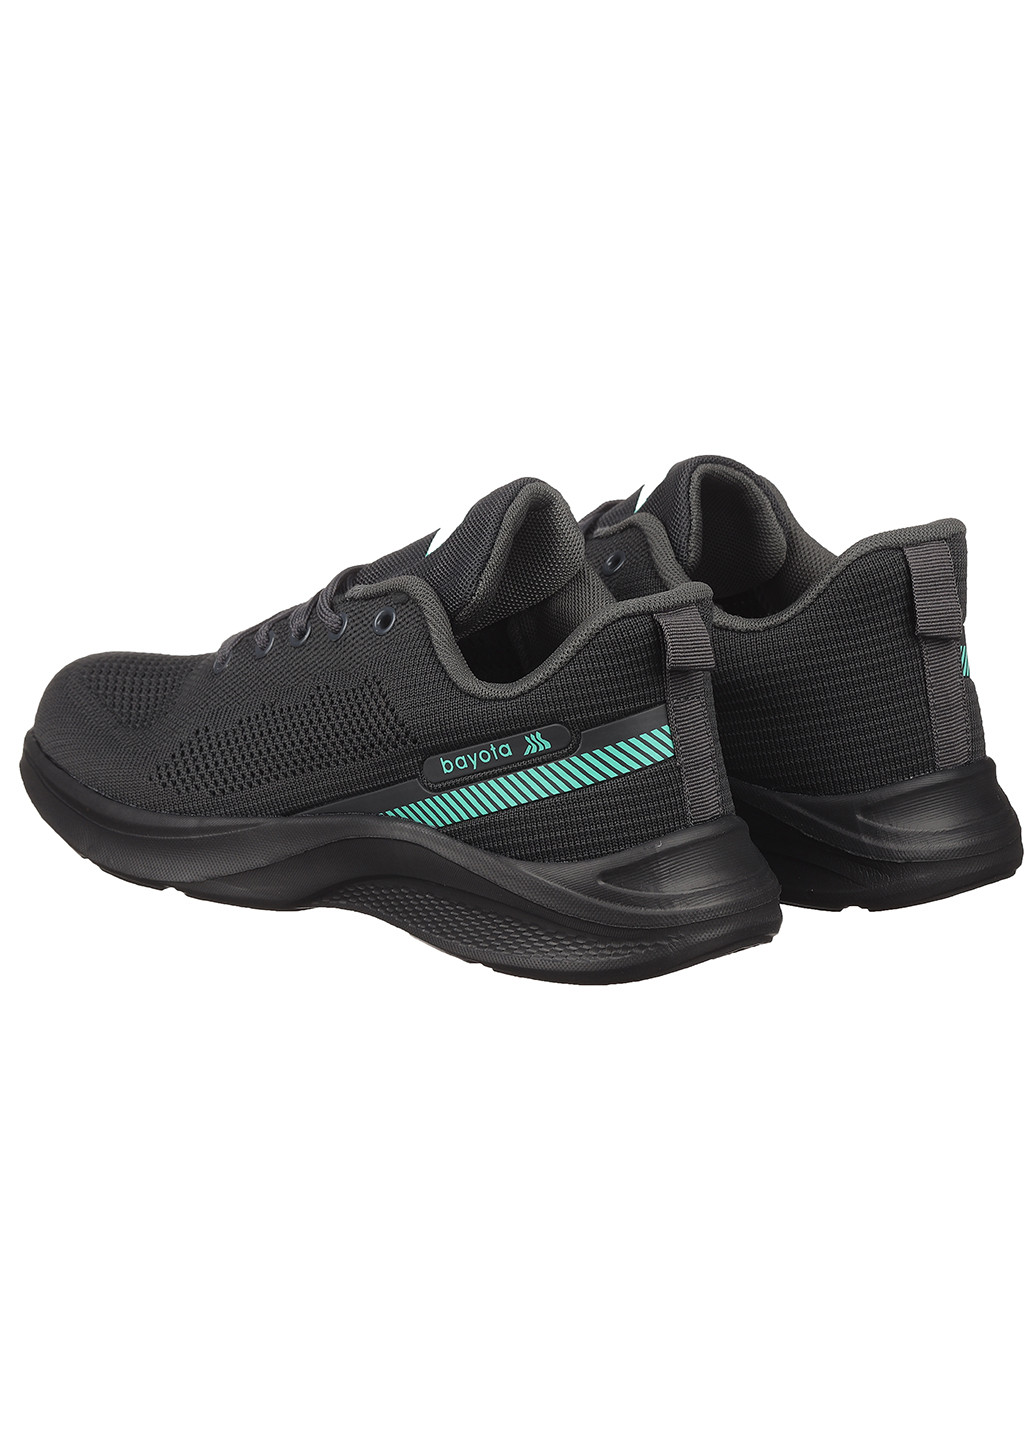 Темно-серые демисезонные женские кроссовки 5030-2 Bayota